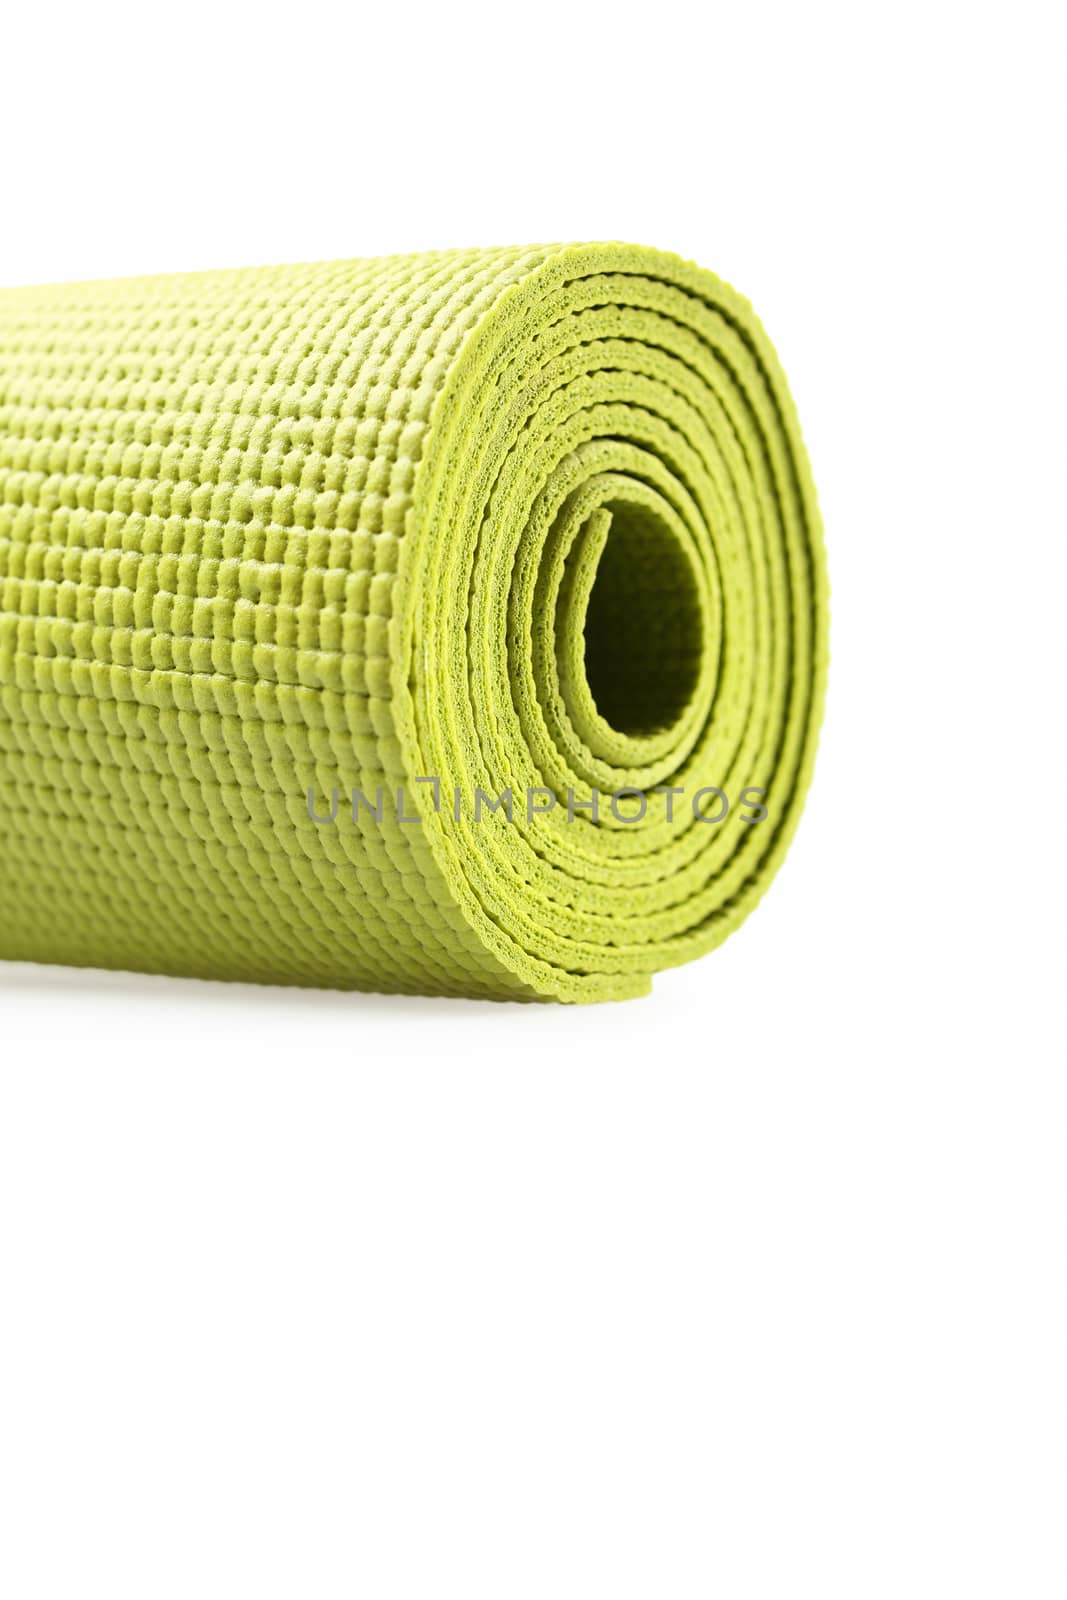 Green exercise mat by marynamyshkovska